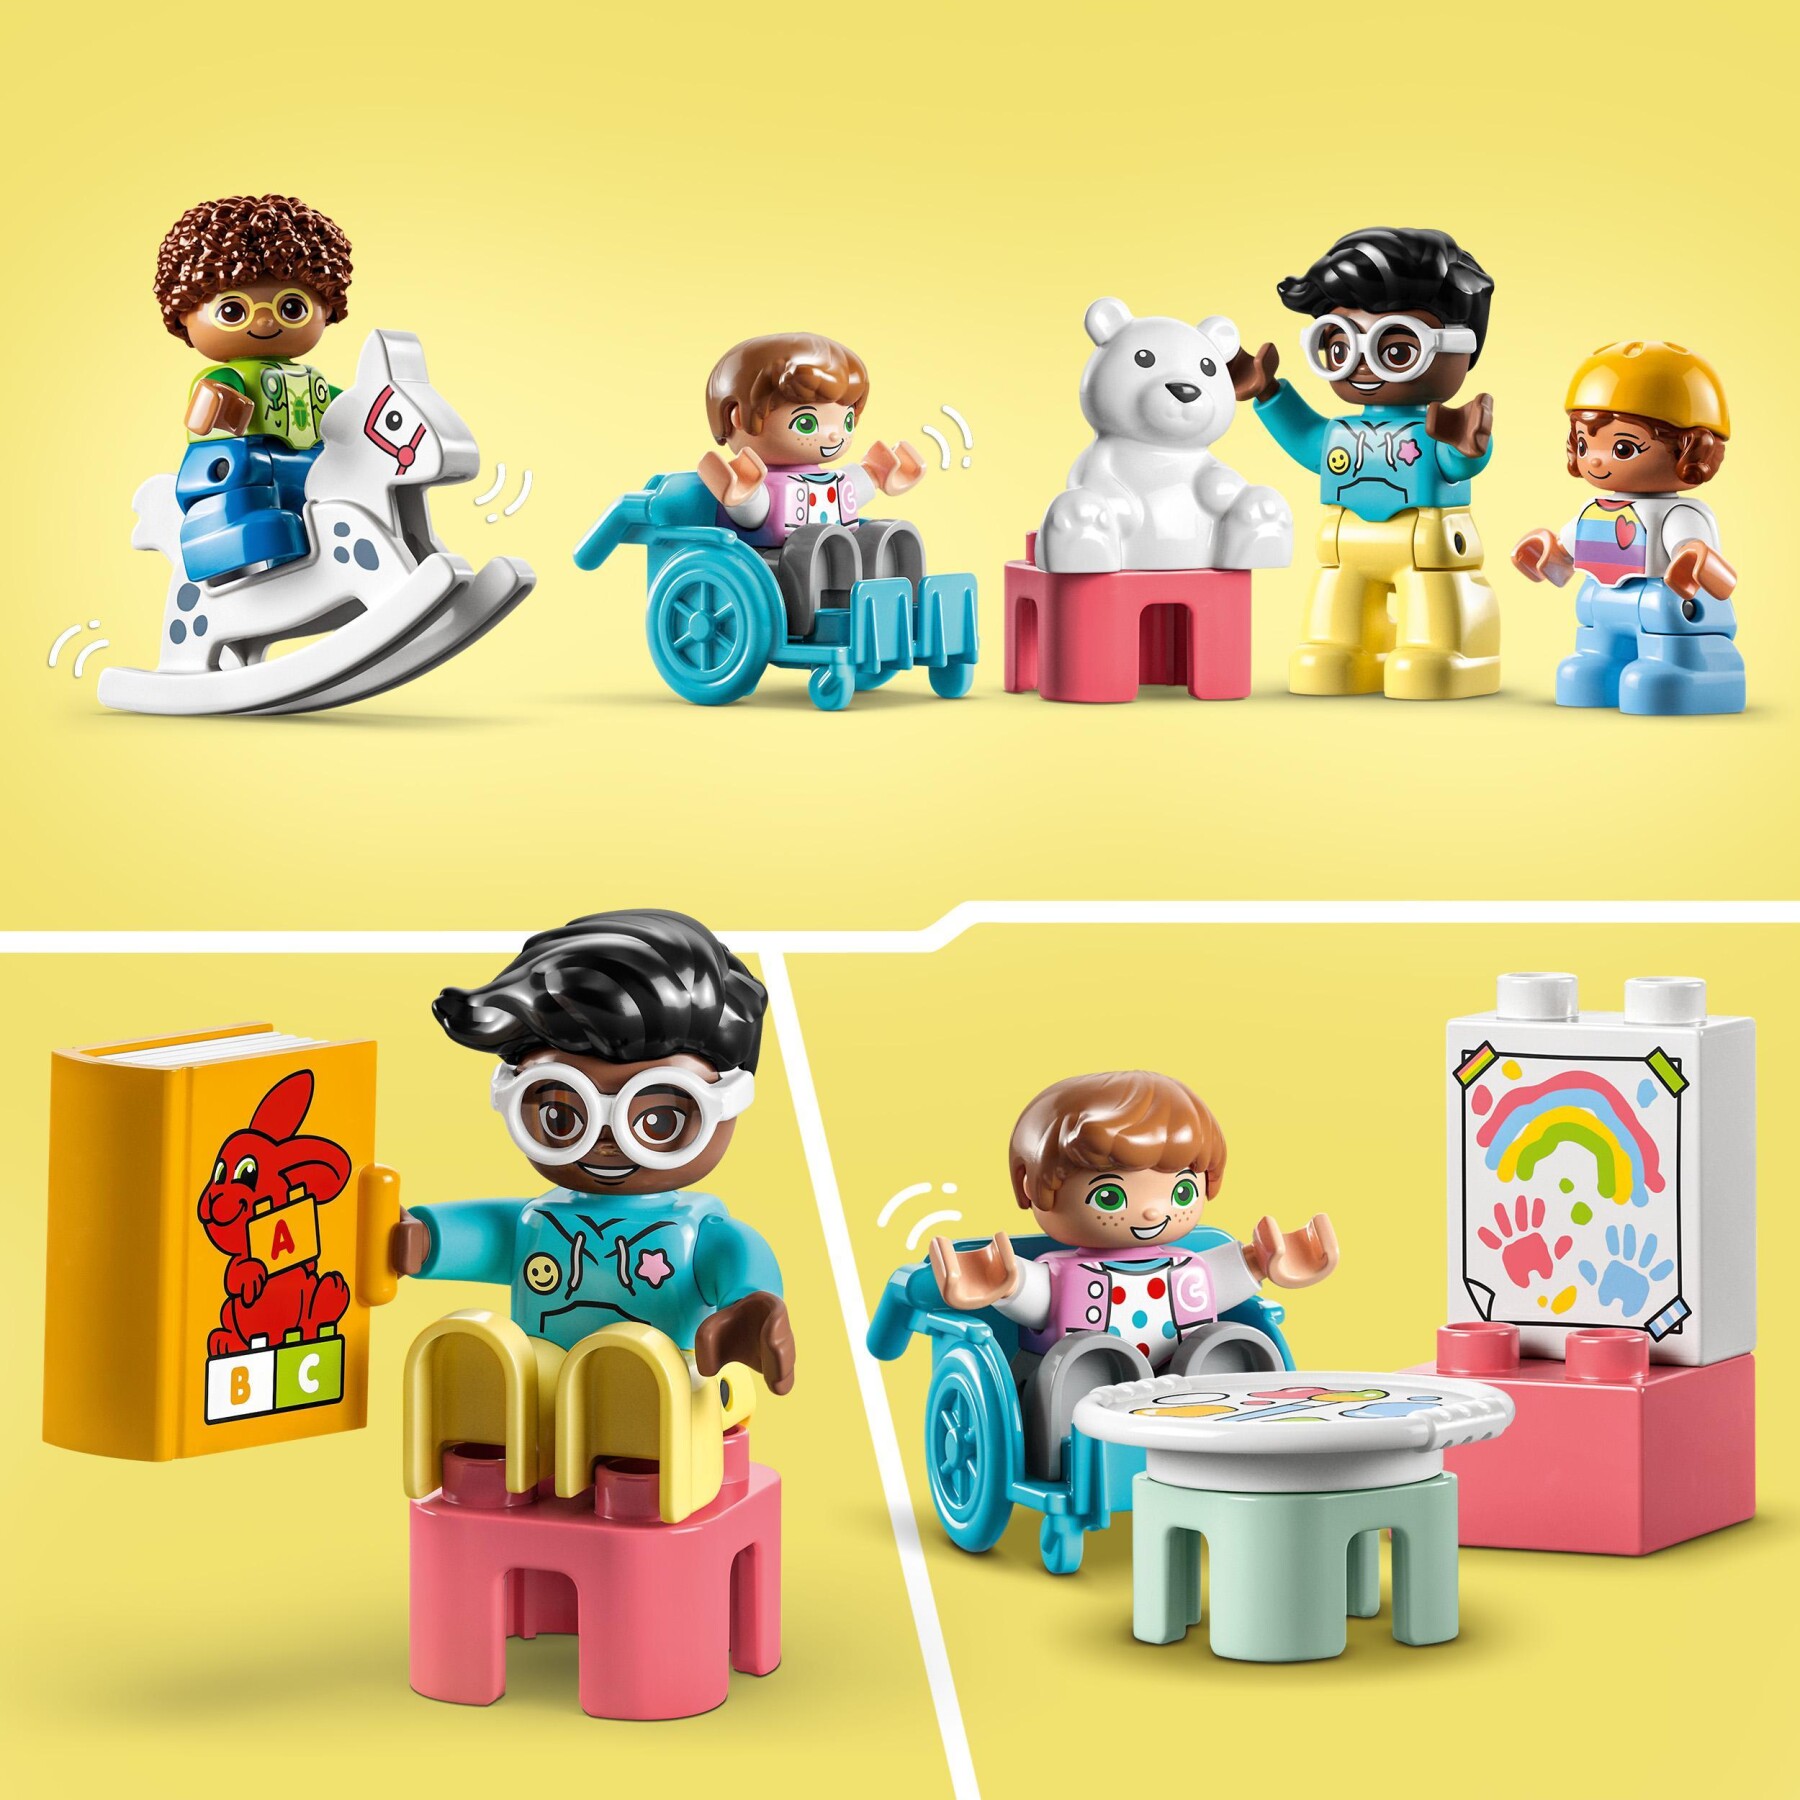 Lego duplo 10992 divertimento all’asilo nido, gioco educativo per bambini dai 2 anni con mattoncini, costruzioni e 4 figure - LEGO DUPLO